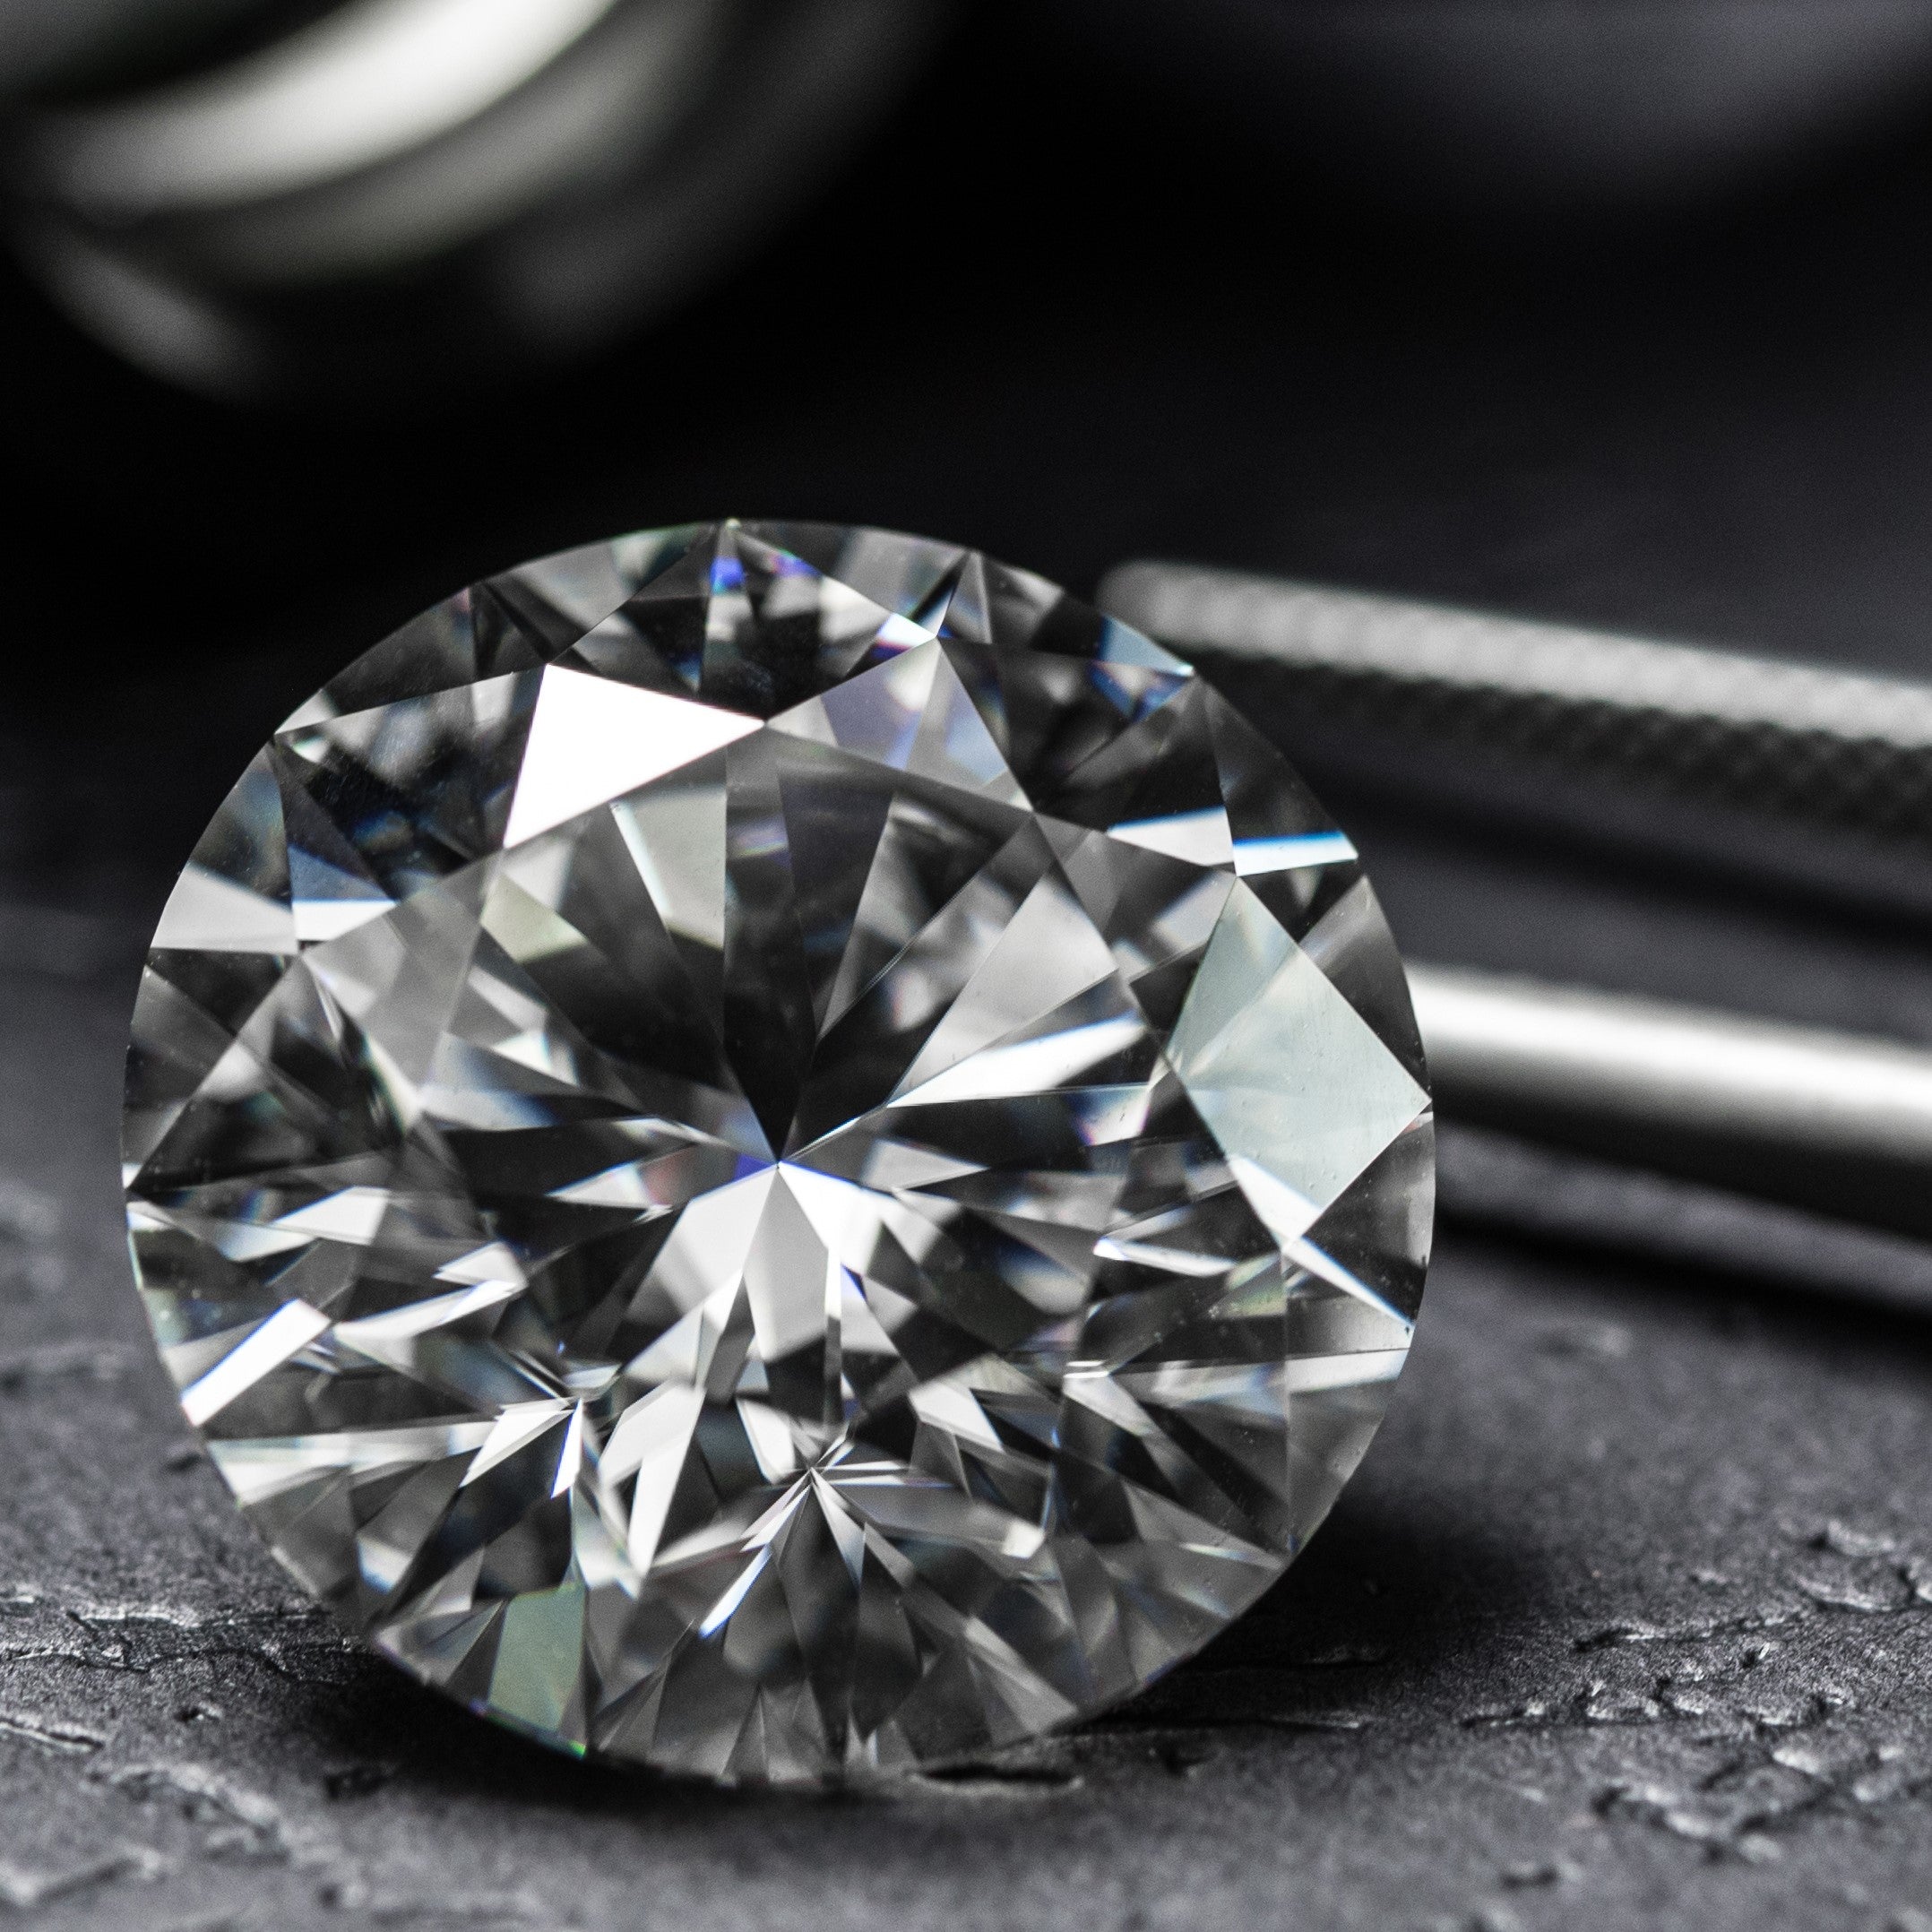 Diamants : le mythe de l'éternité pour une industrie fructueuse 